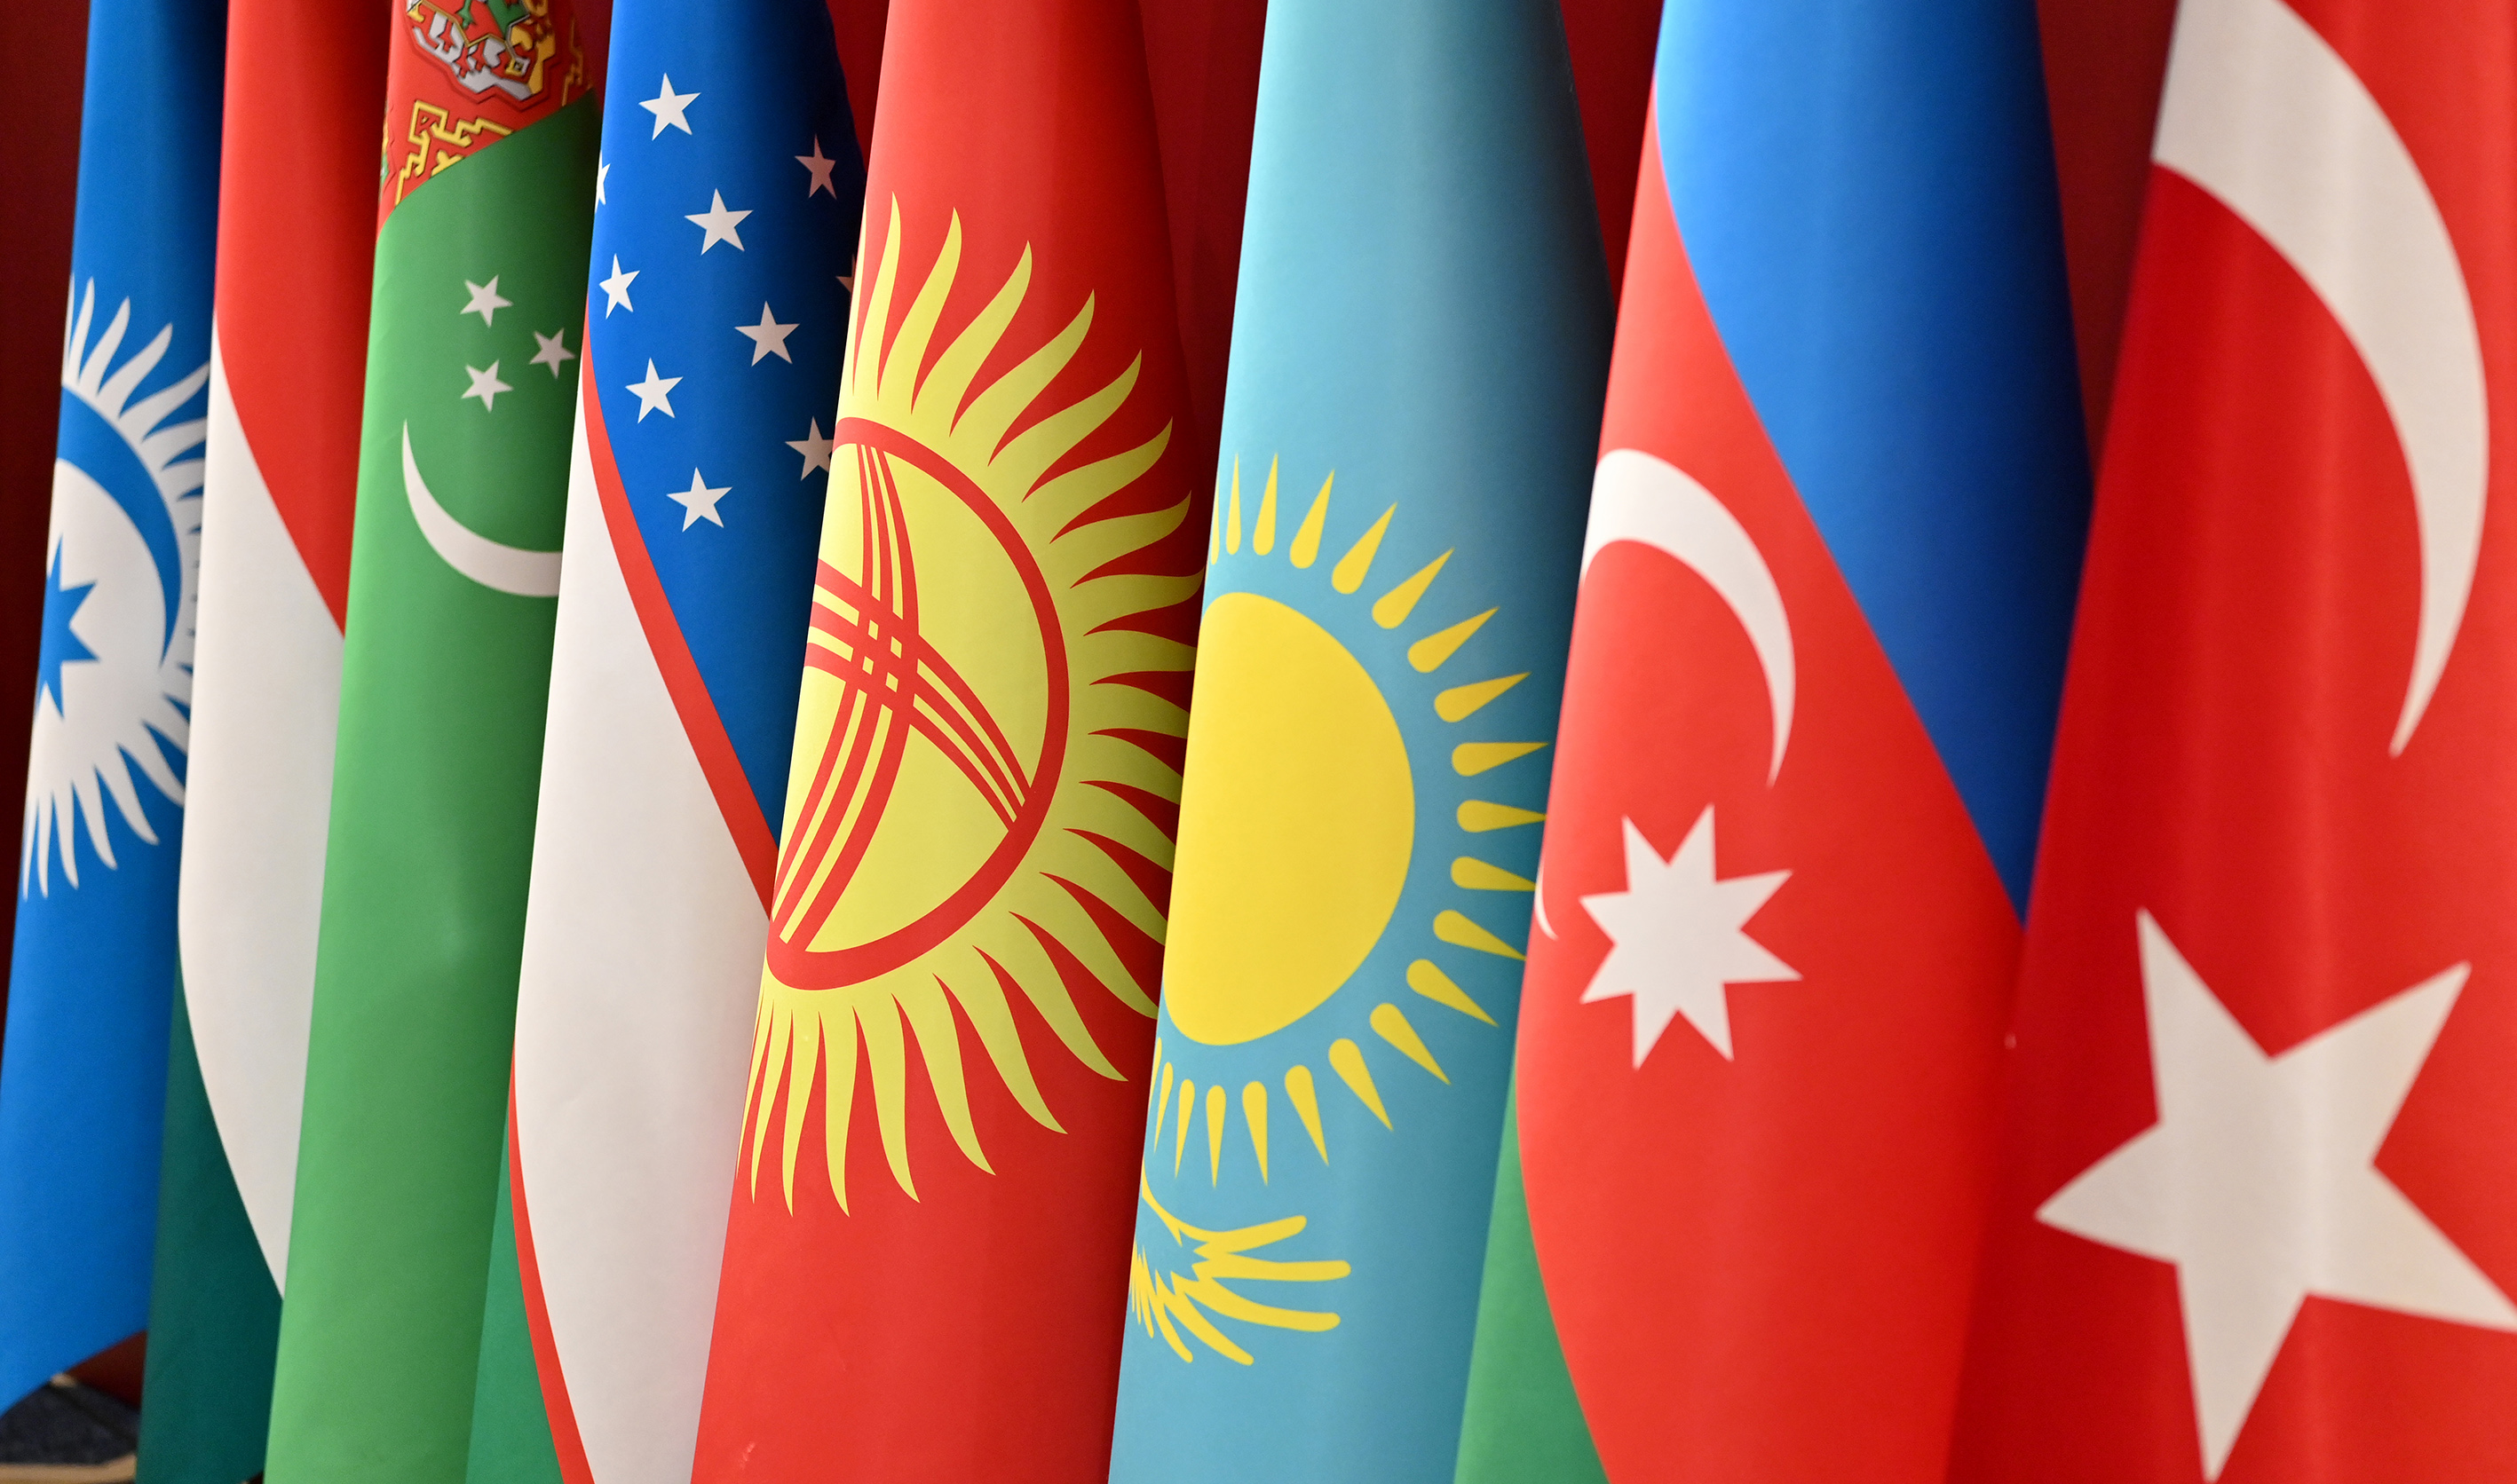 Развитие туризма и сохранение культурного наследия: перспективные направления сотрудничества тюркских государств